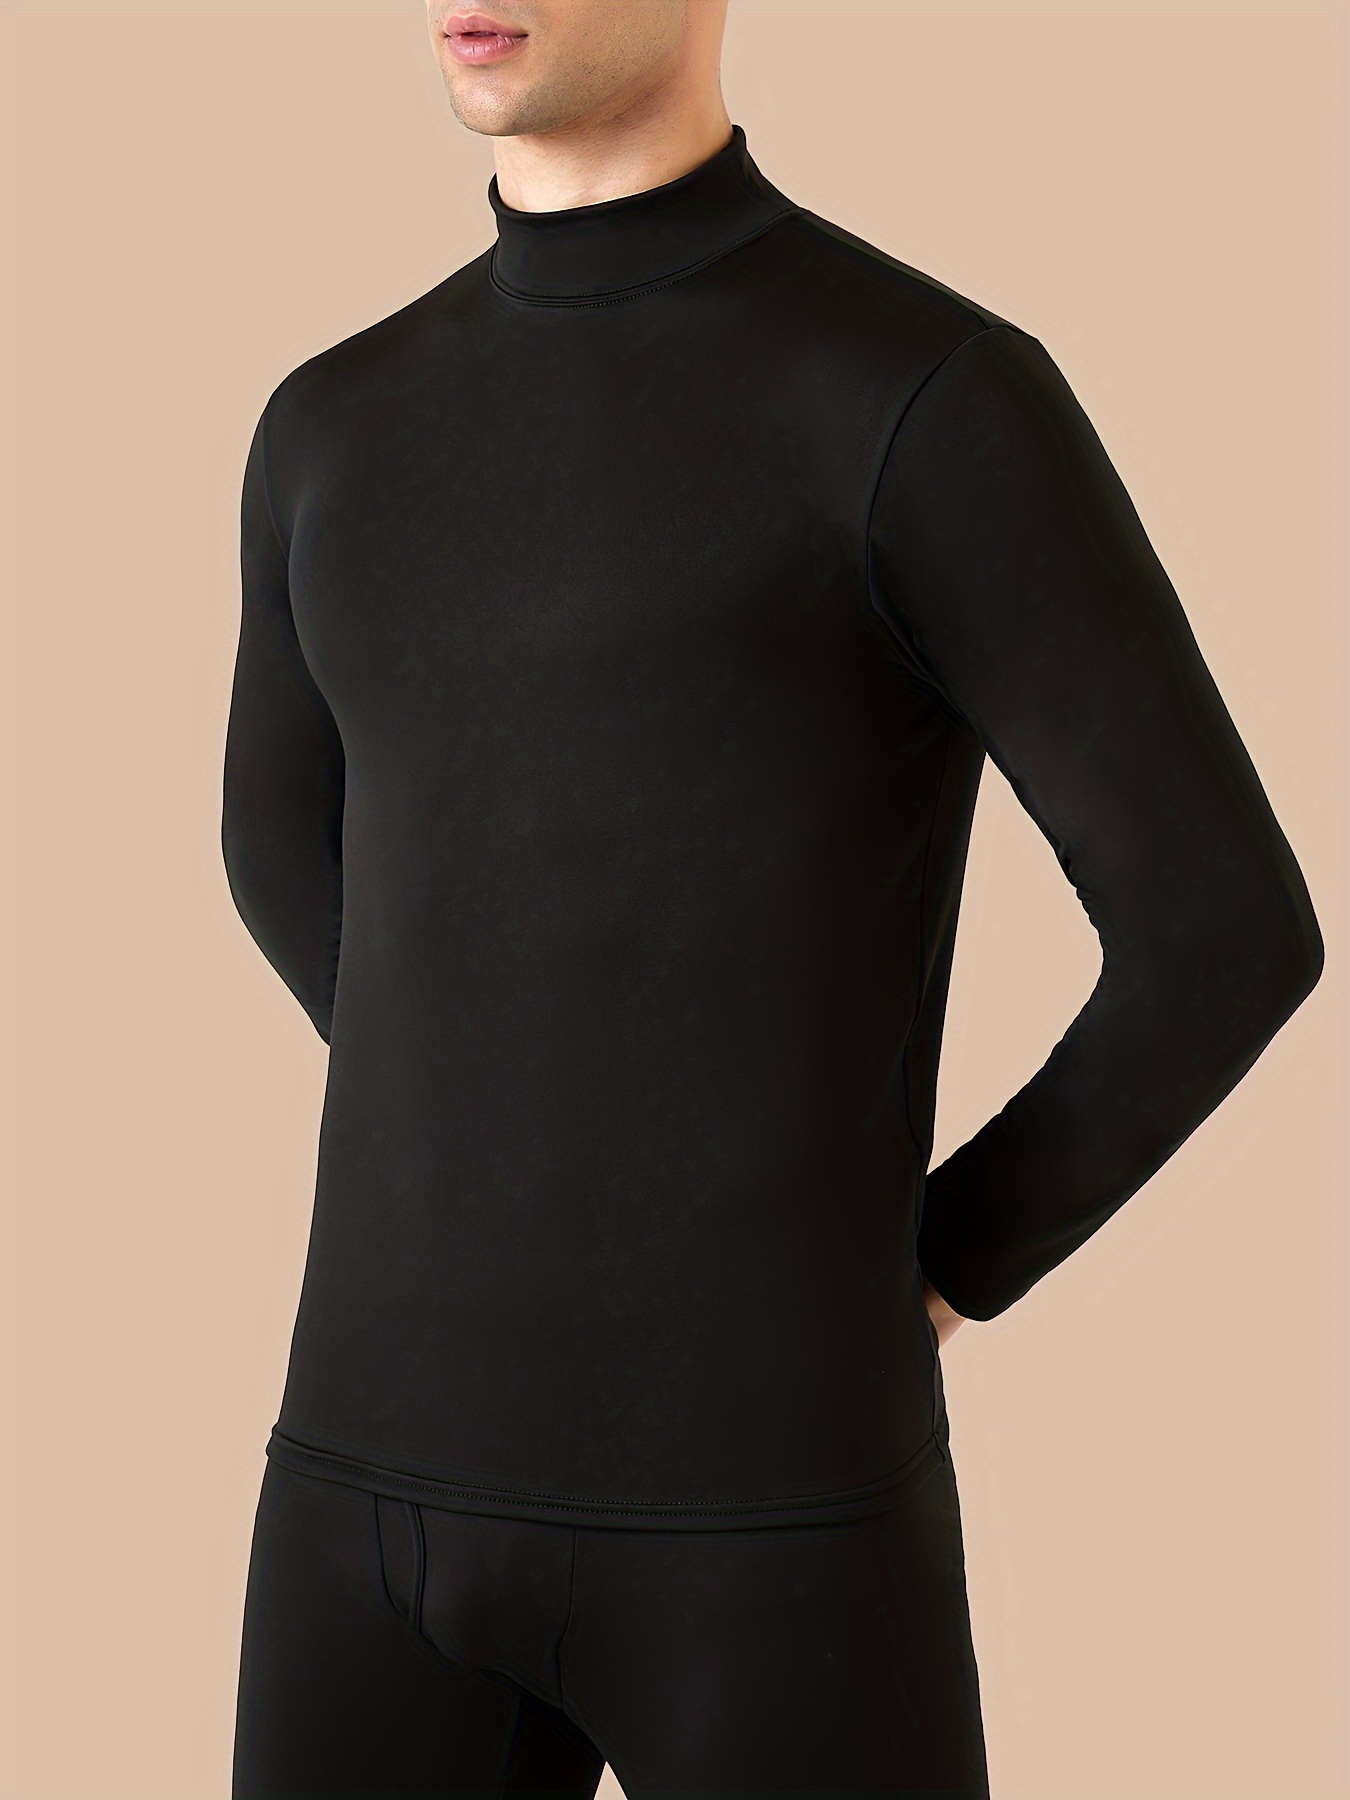  Camiseta básica de cuello alto para hombre, ajustada, ligera,  manga corta, ropa interior térmica, Albaricoque : Ropa, Zapatos y Joyería